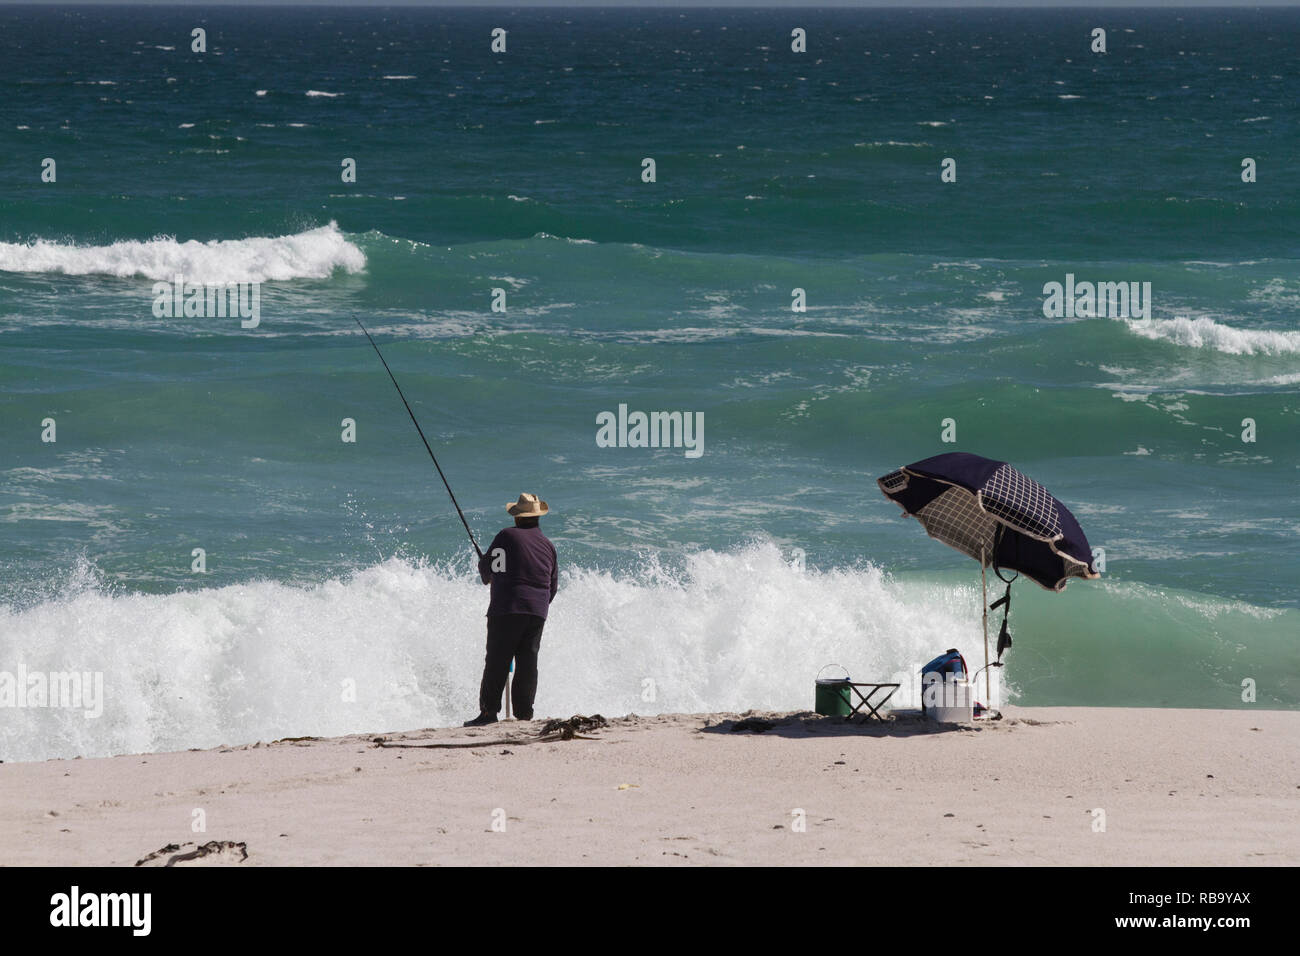 Fisherman on the beach, next to umbrella Stock Photo